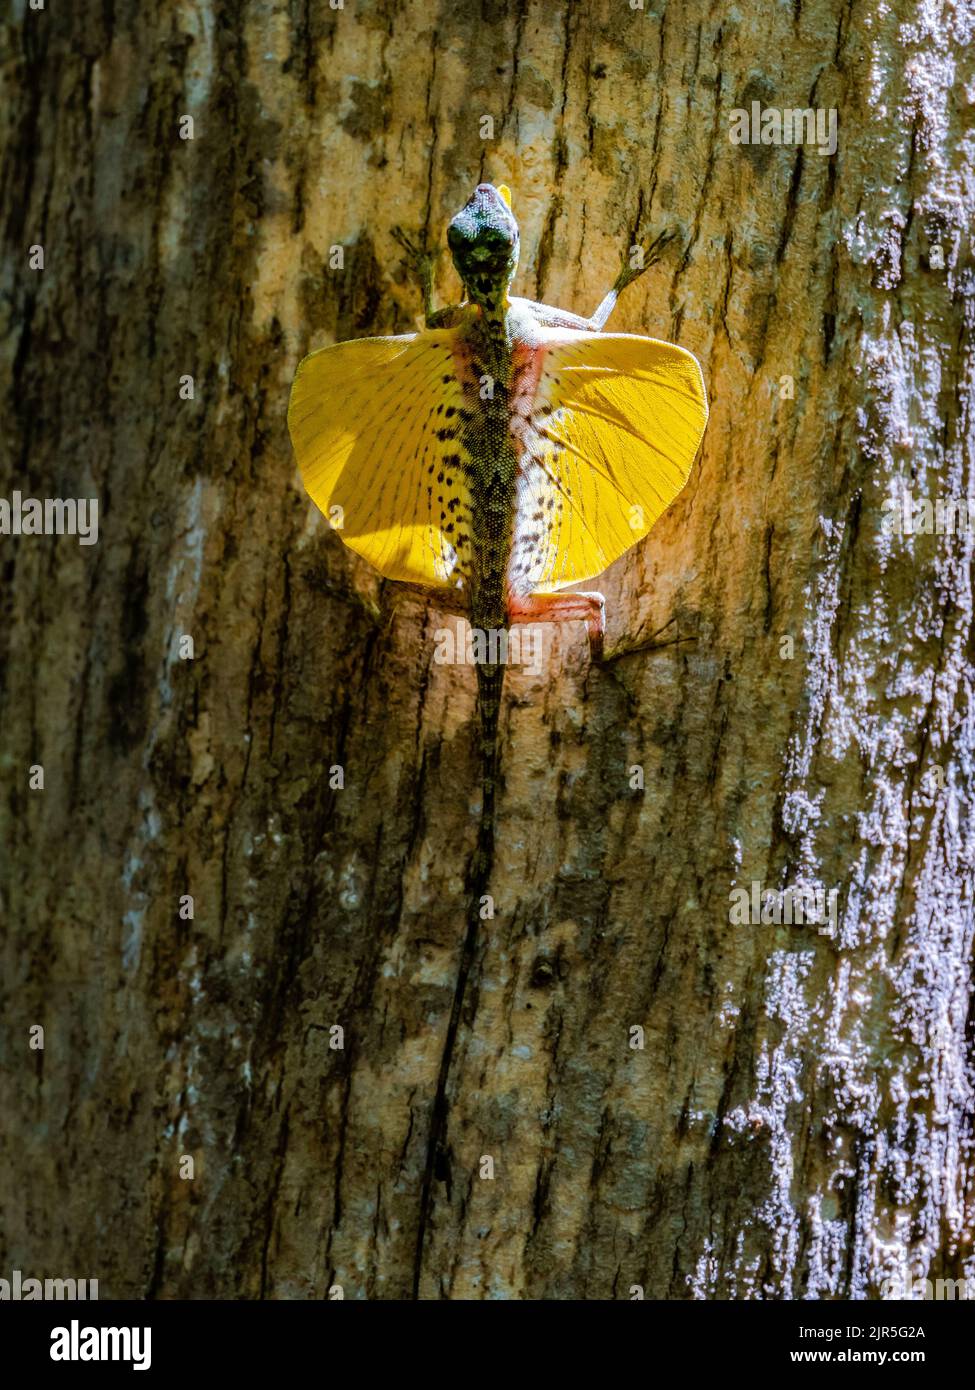 Un lizard endemico solawesi (Draco spilonotus) in mostra con patagia gialla luminosa aperta. Parco Nazionale di Tangkoko, Sulawesi, Indonesia. Foto Stock